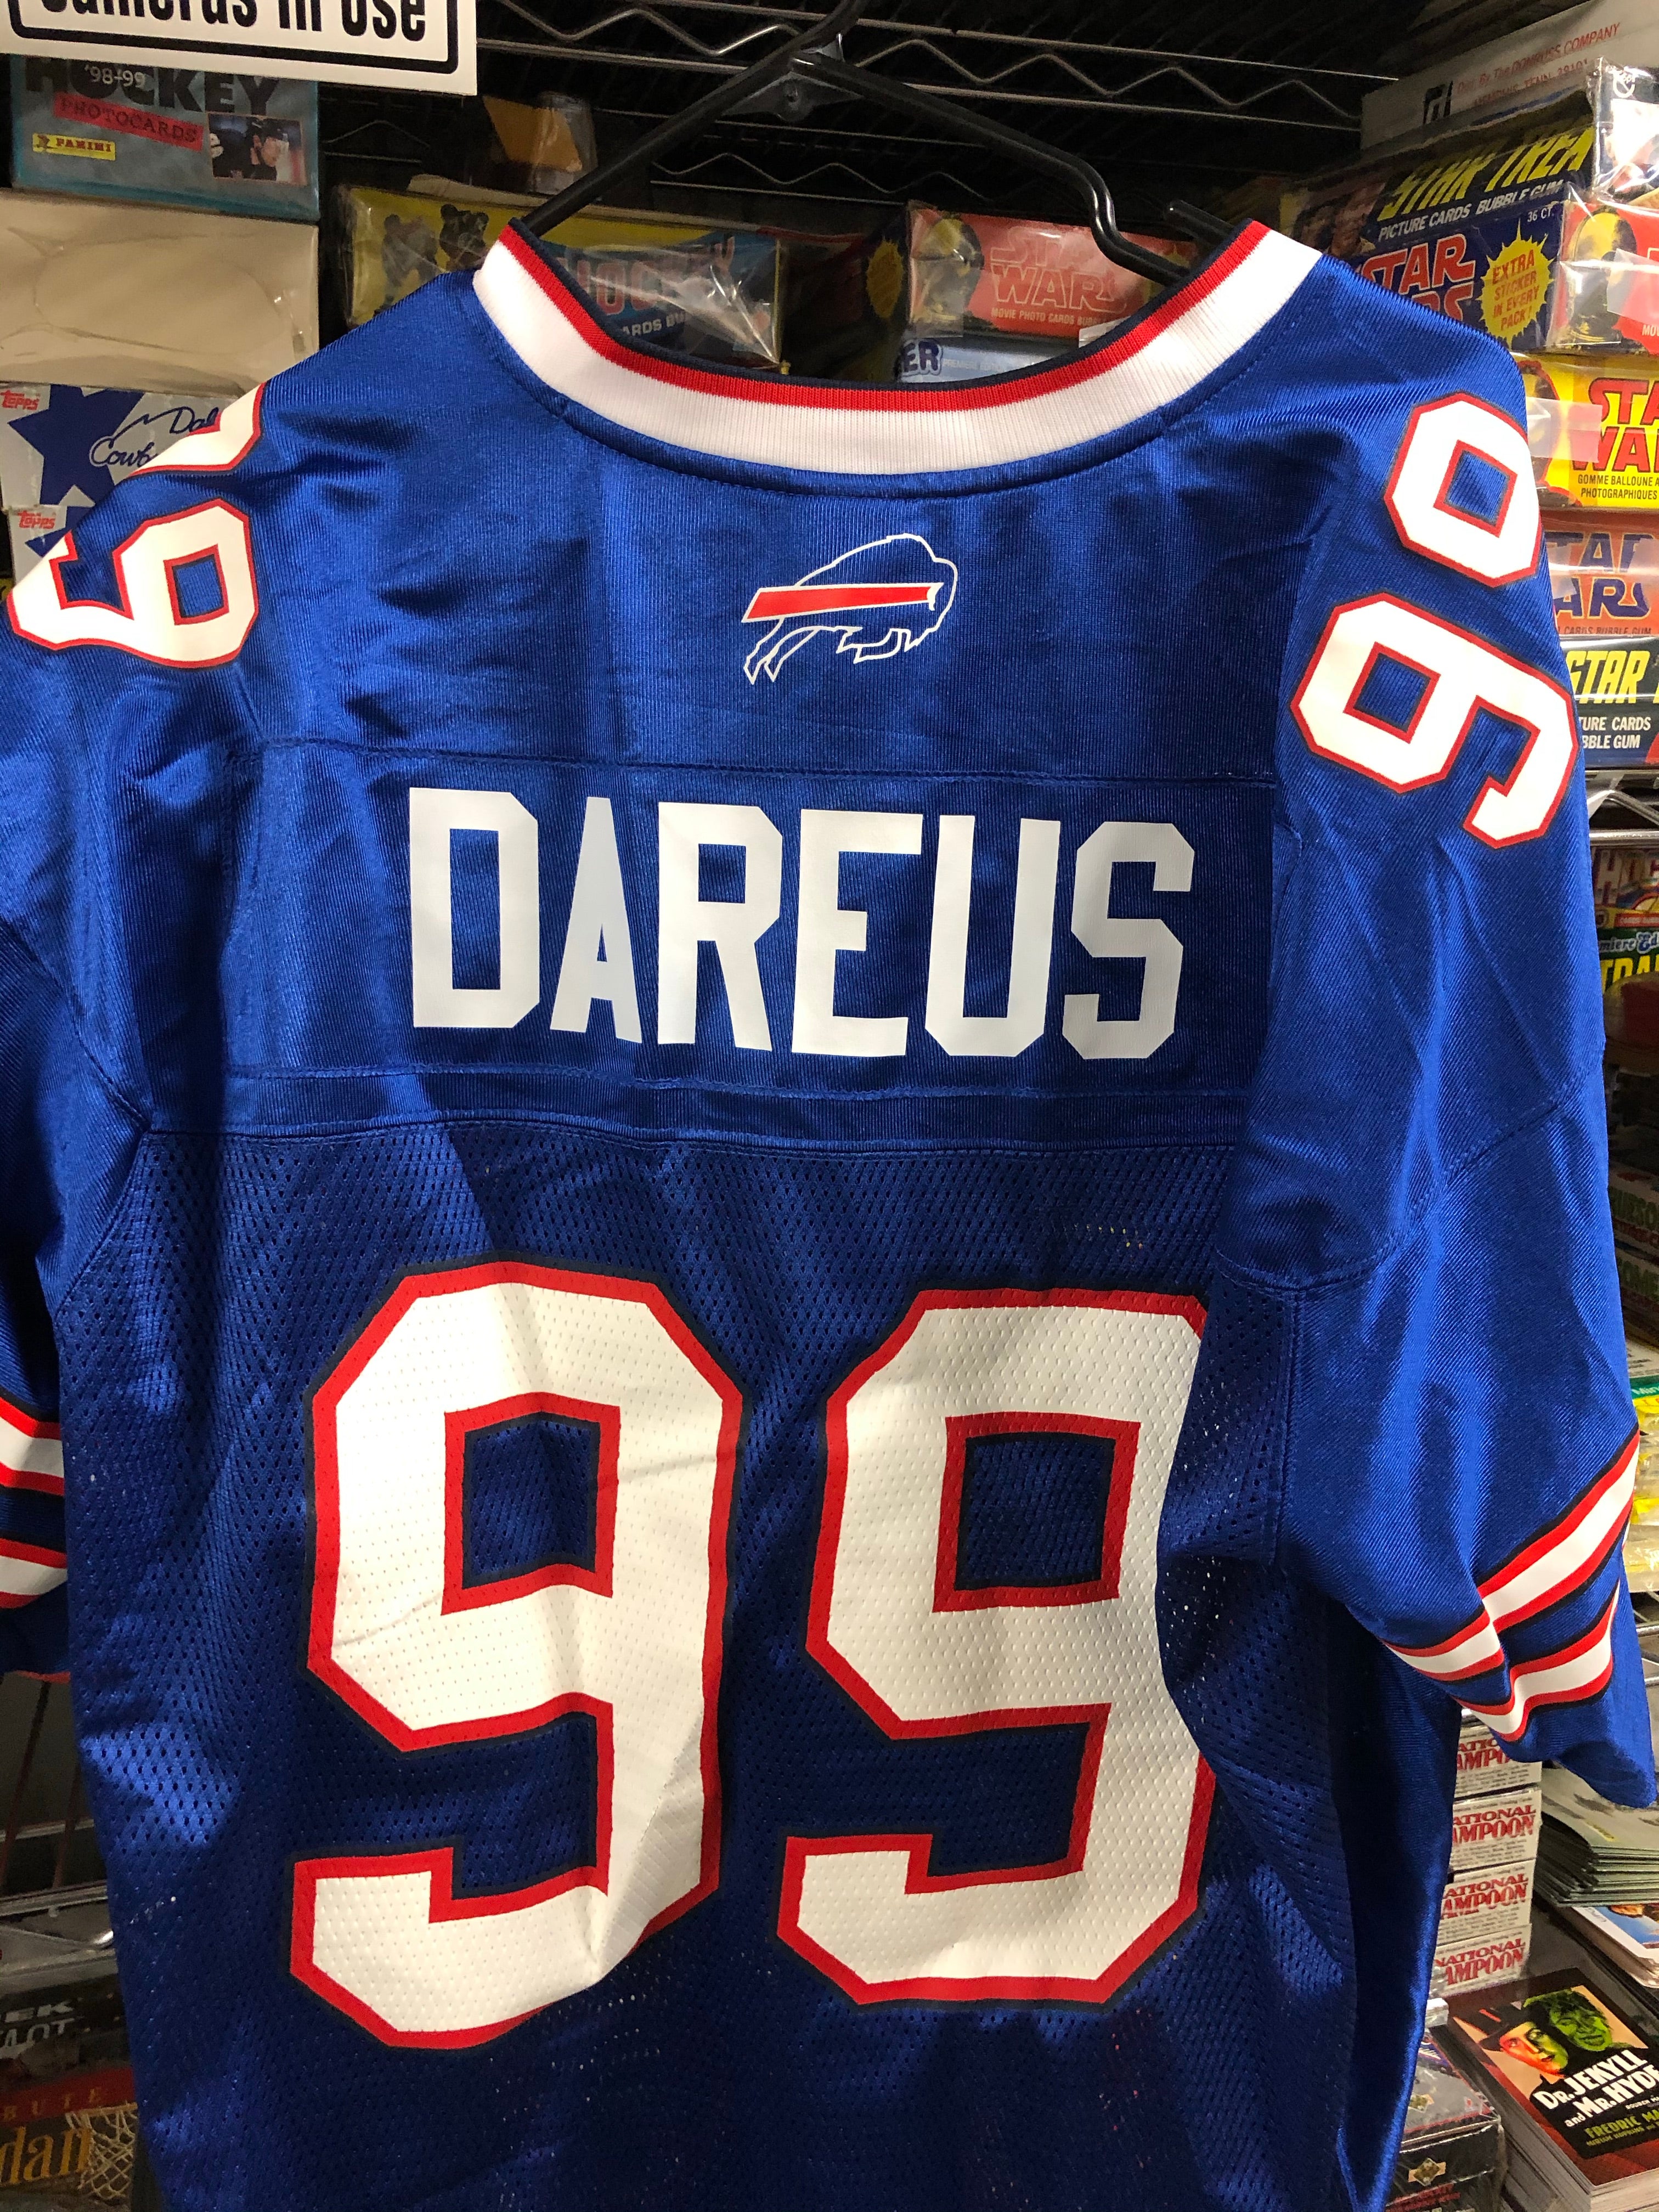 Buffalo Bills NFL original pro football XL jersey Marcel Dareus